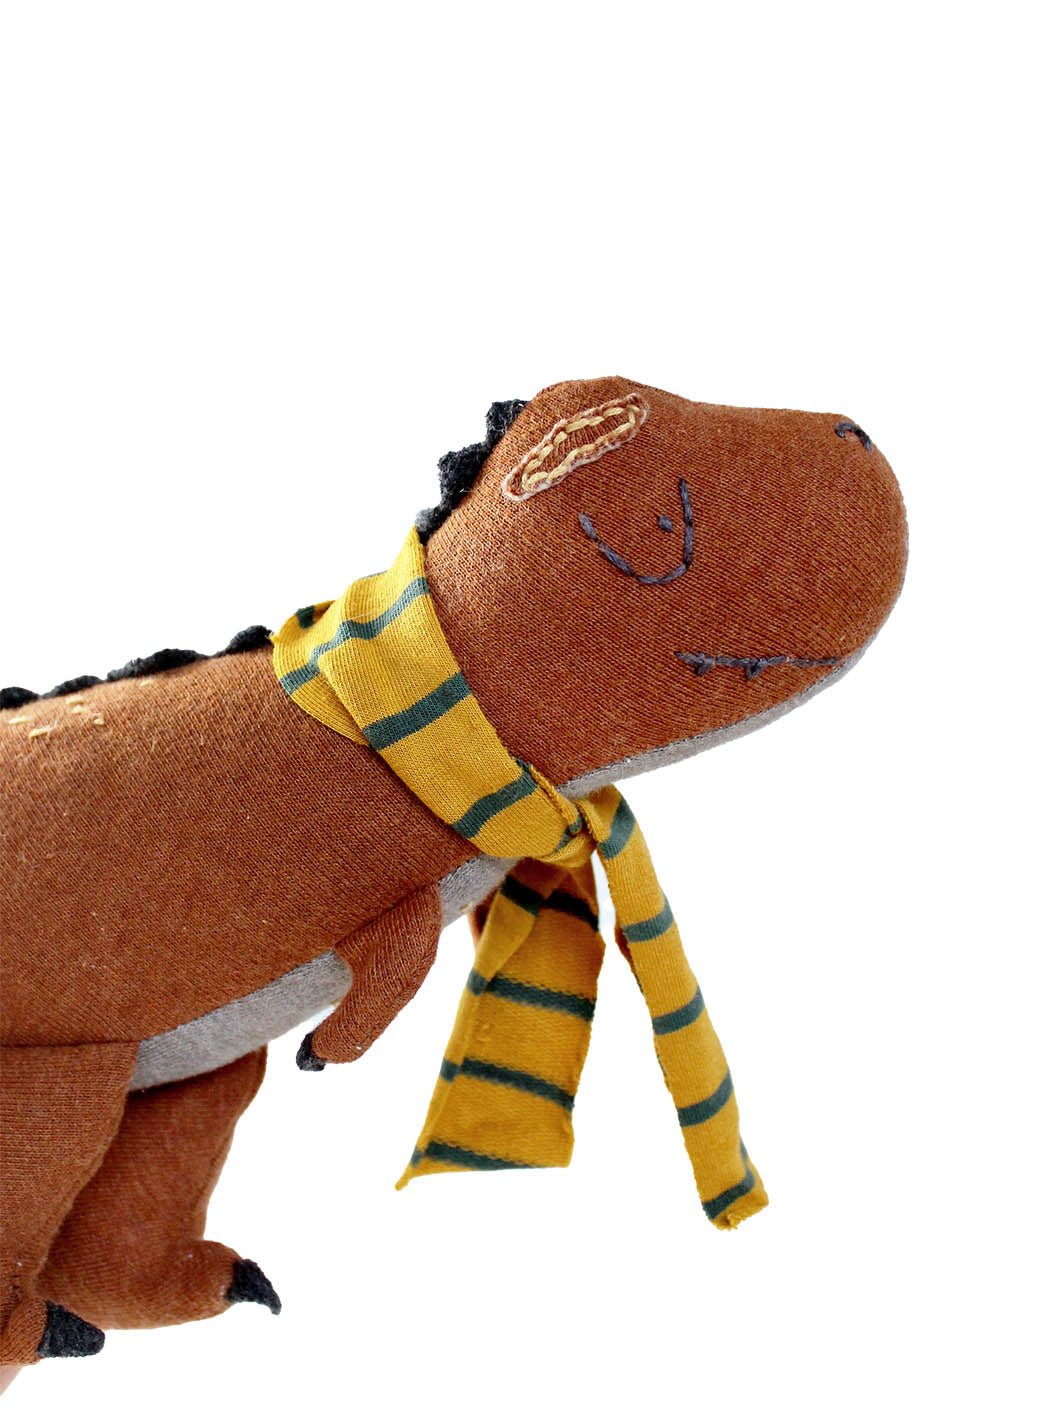 t-rex als Kuscheltier in rostrot mit einem gestreiften Schal in gelb grün